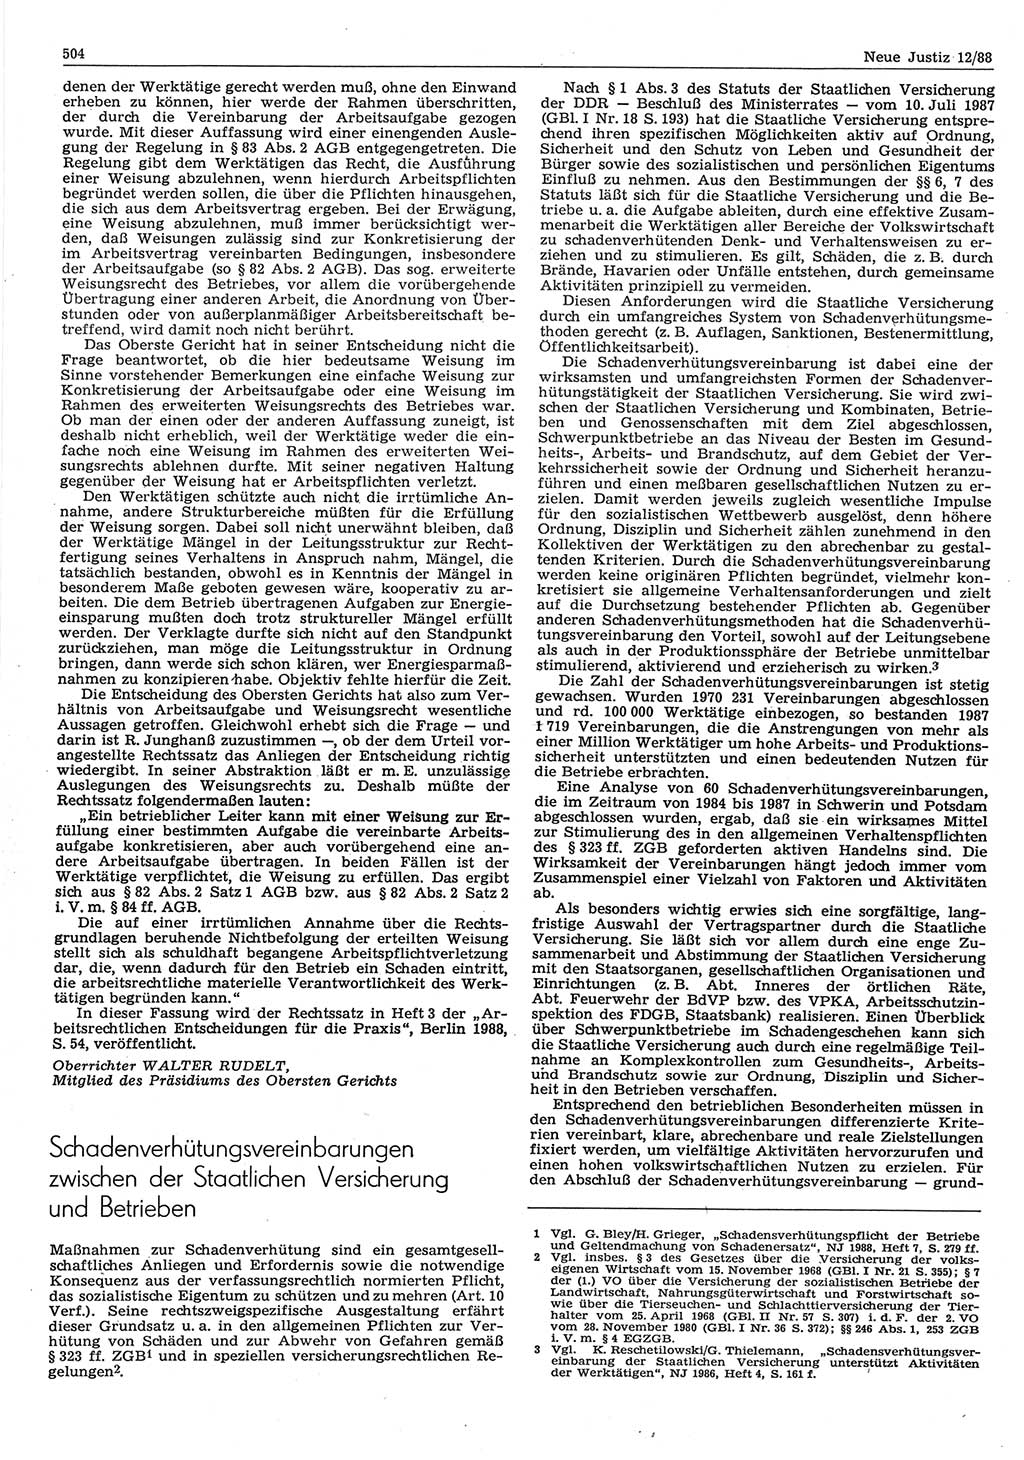 Neue Justiz (NJ), Zeitschrift für sozialistisches Recht und Gesetzlichkeit [Deutsche Demokratische Republik (DDR)], 42. Jahrgang 1988, Seite 504 (NJ DDR 1988, S. 504)